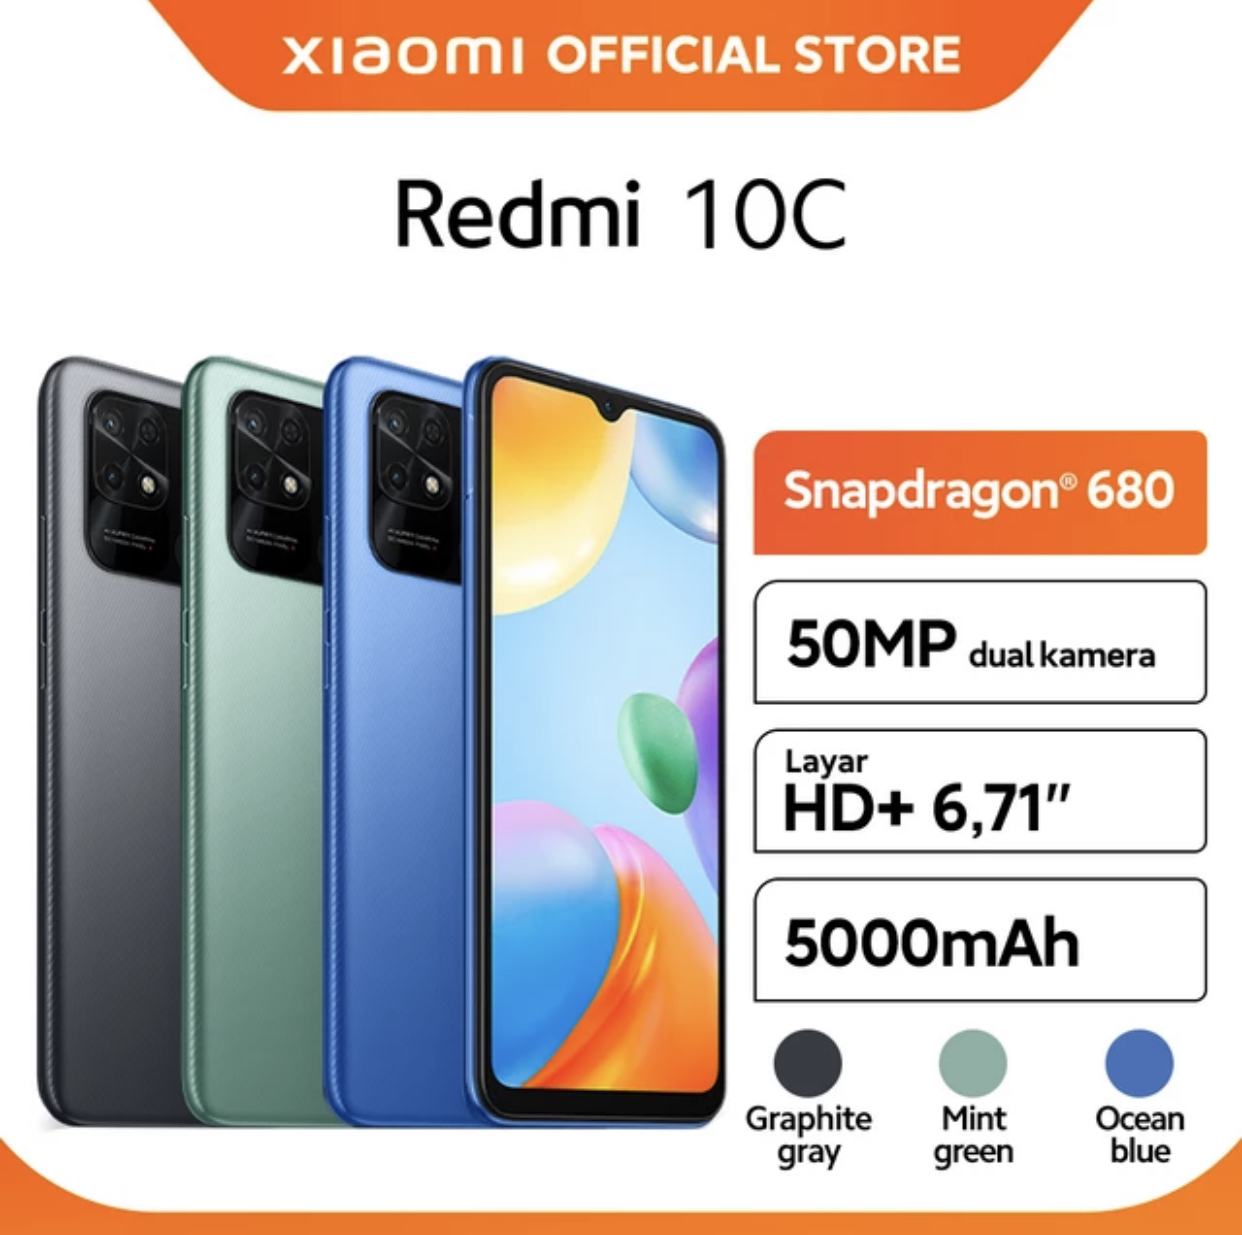 9. Xiaomi redmi 10C